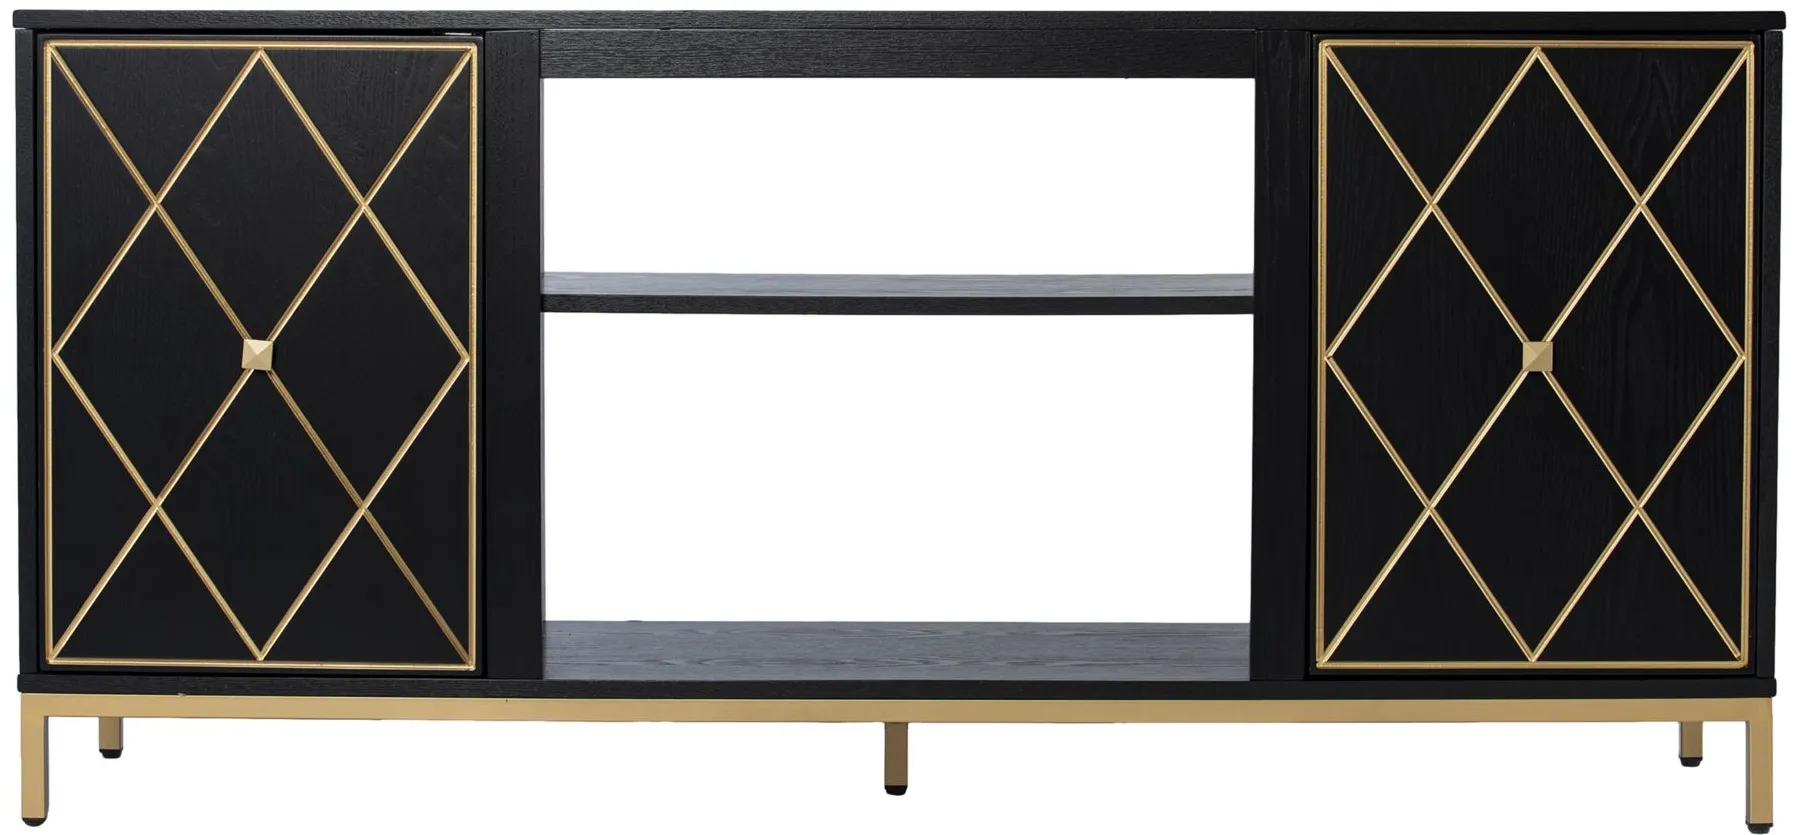 Sedbergh Media Console in Black by SEI Furniture